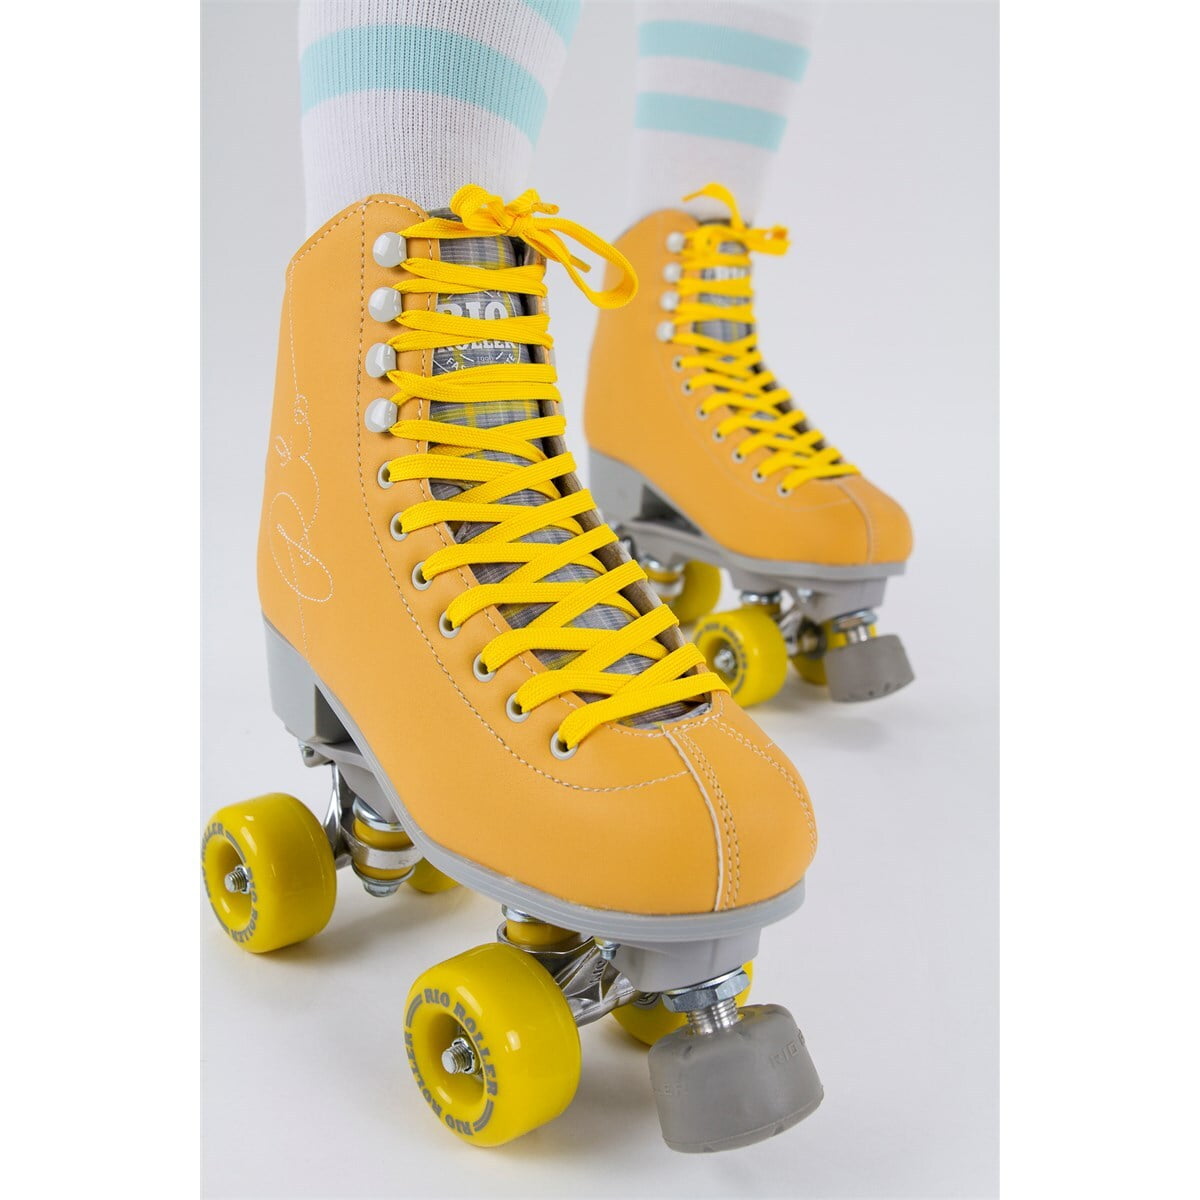 Rio Roller Signature Quad Roller Skates